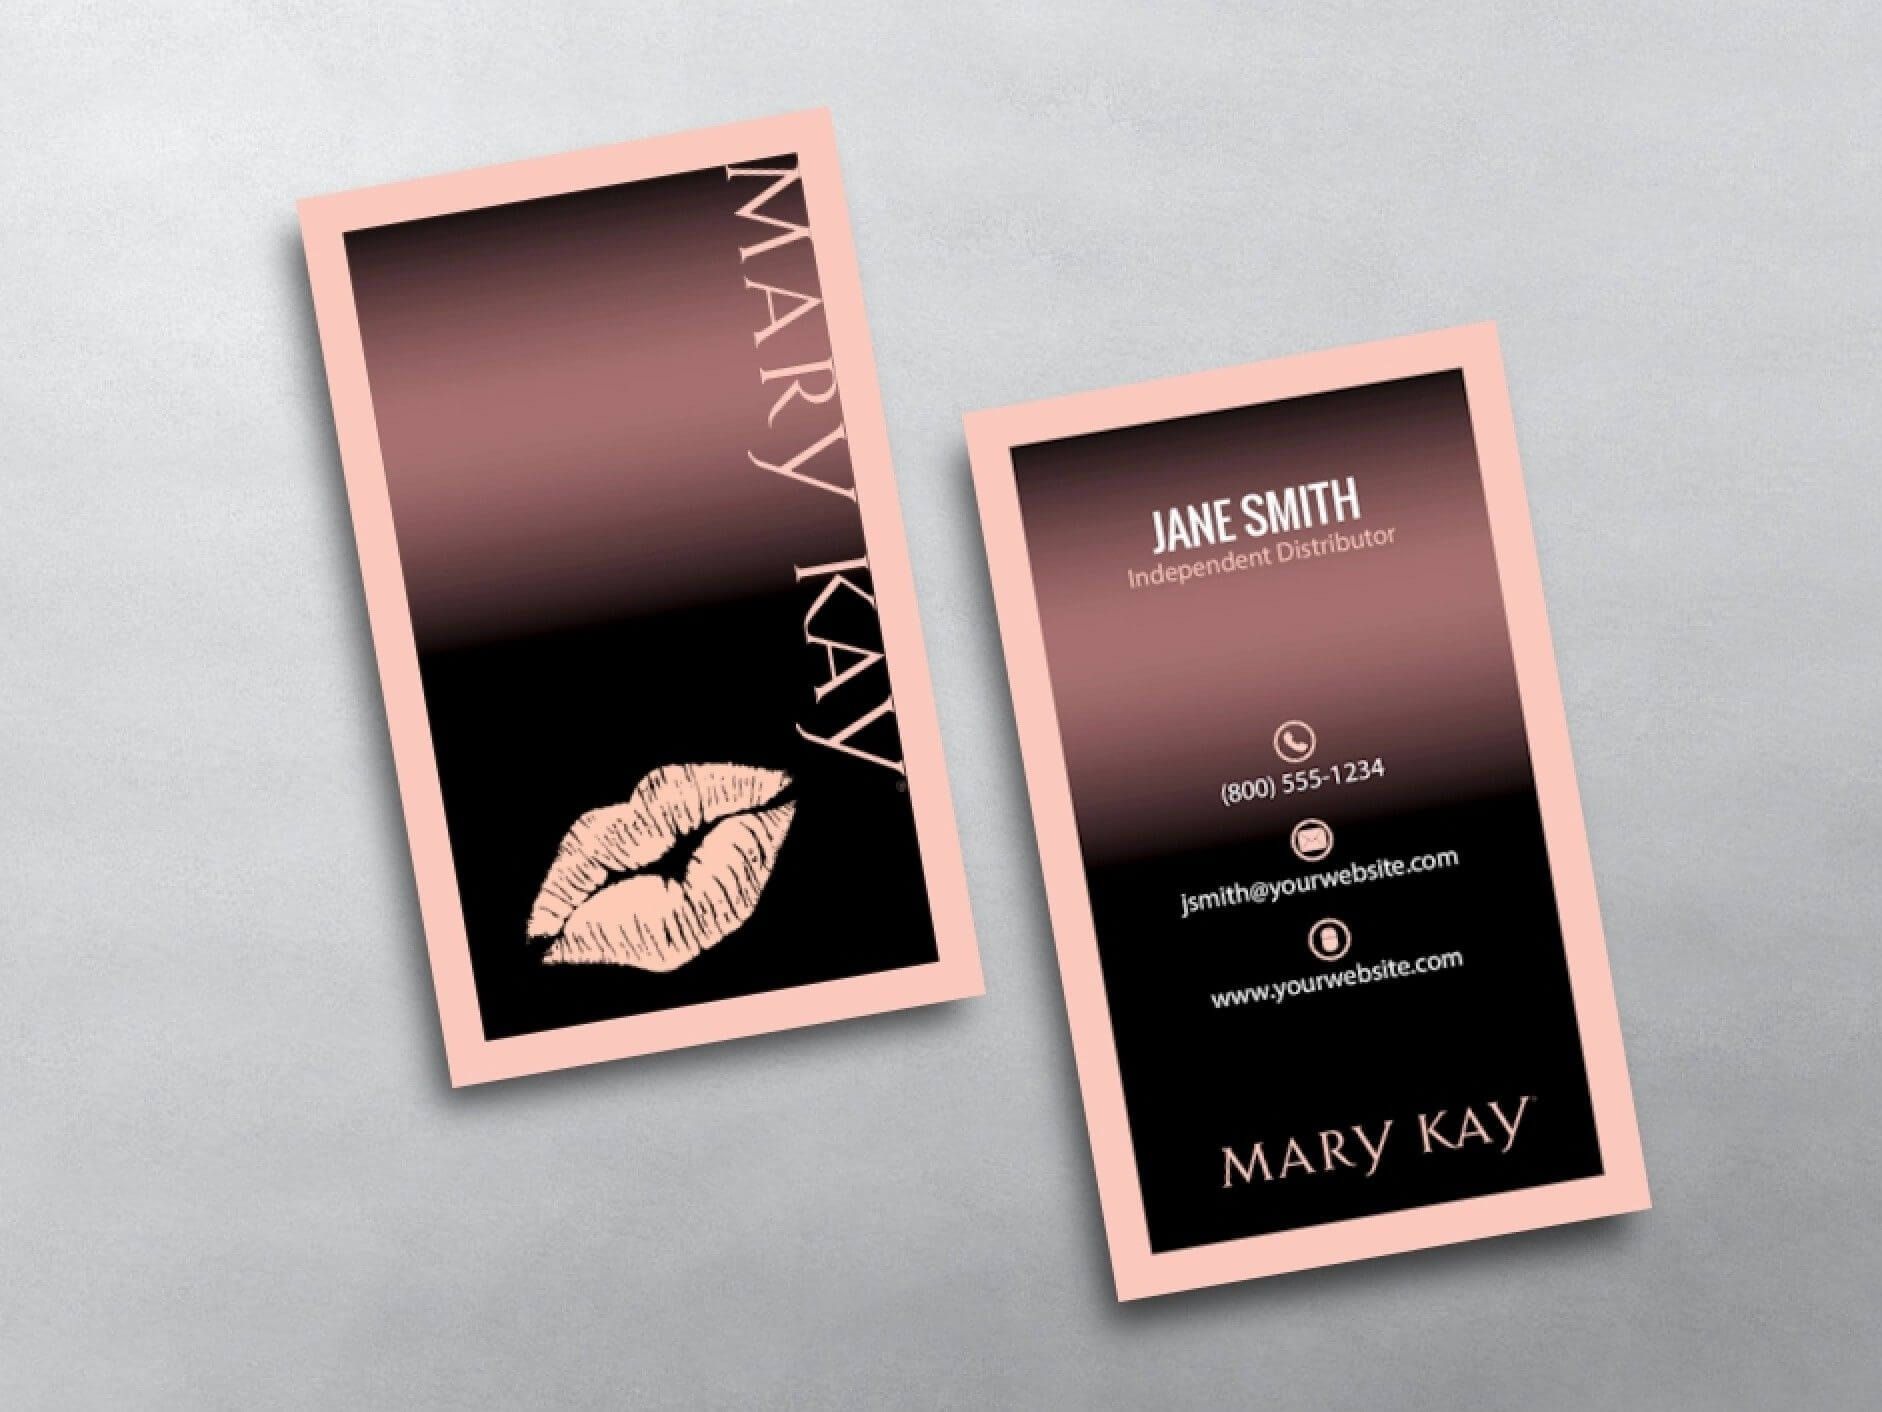 Mary Kay Business Cards | Mary Kay, Mary Kay Cosmetics, Free Intended For Mary Kay Business Cards Templates Free